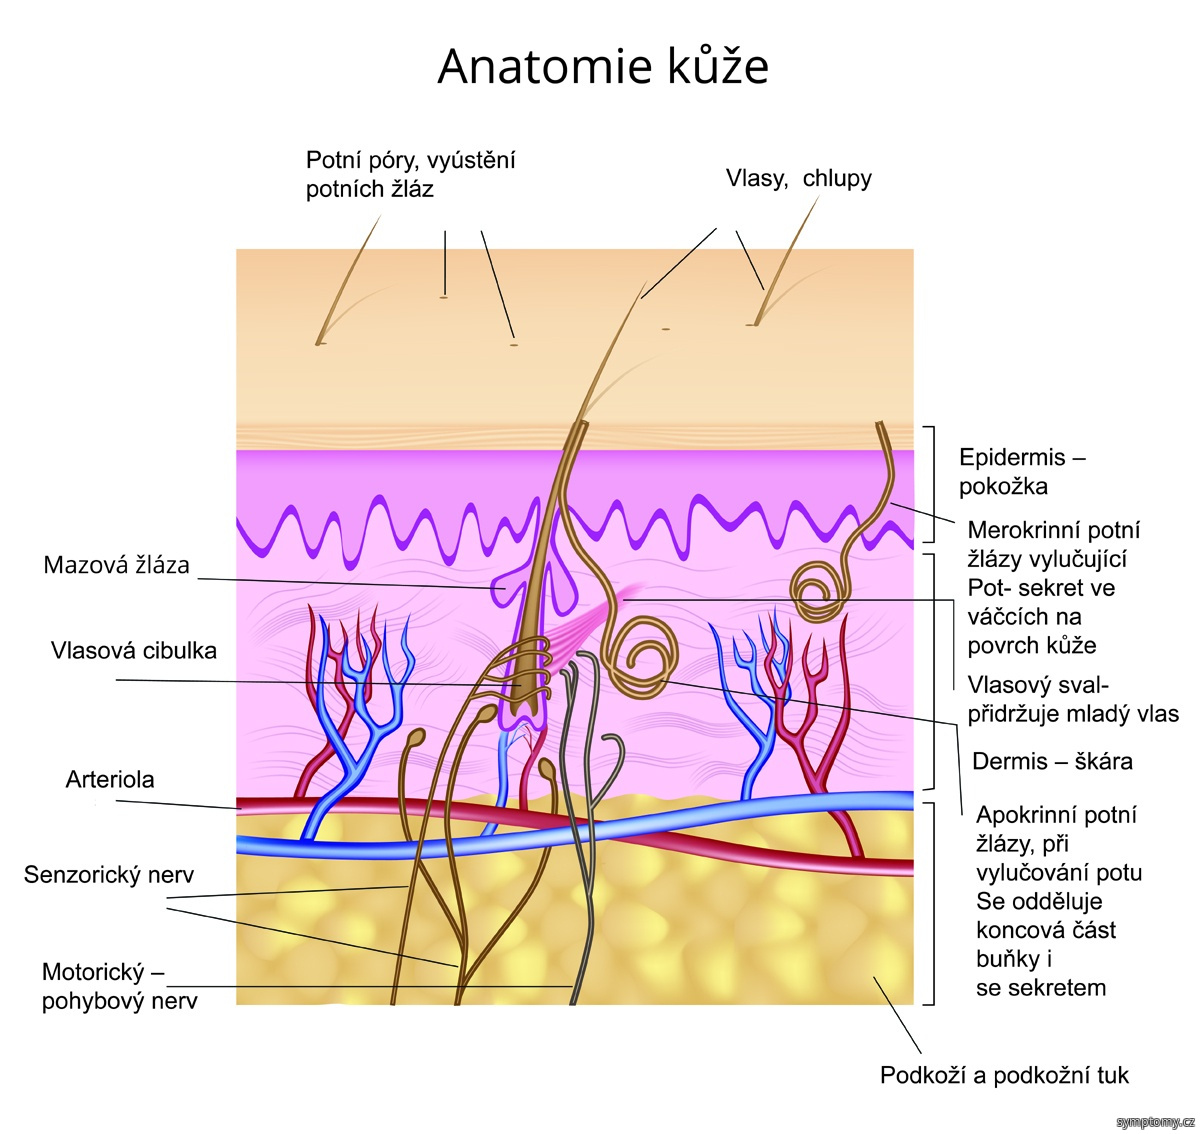 Anatomie kůže